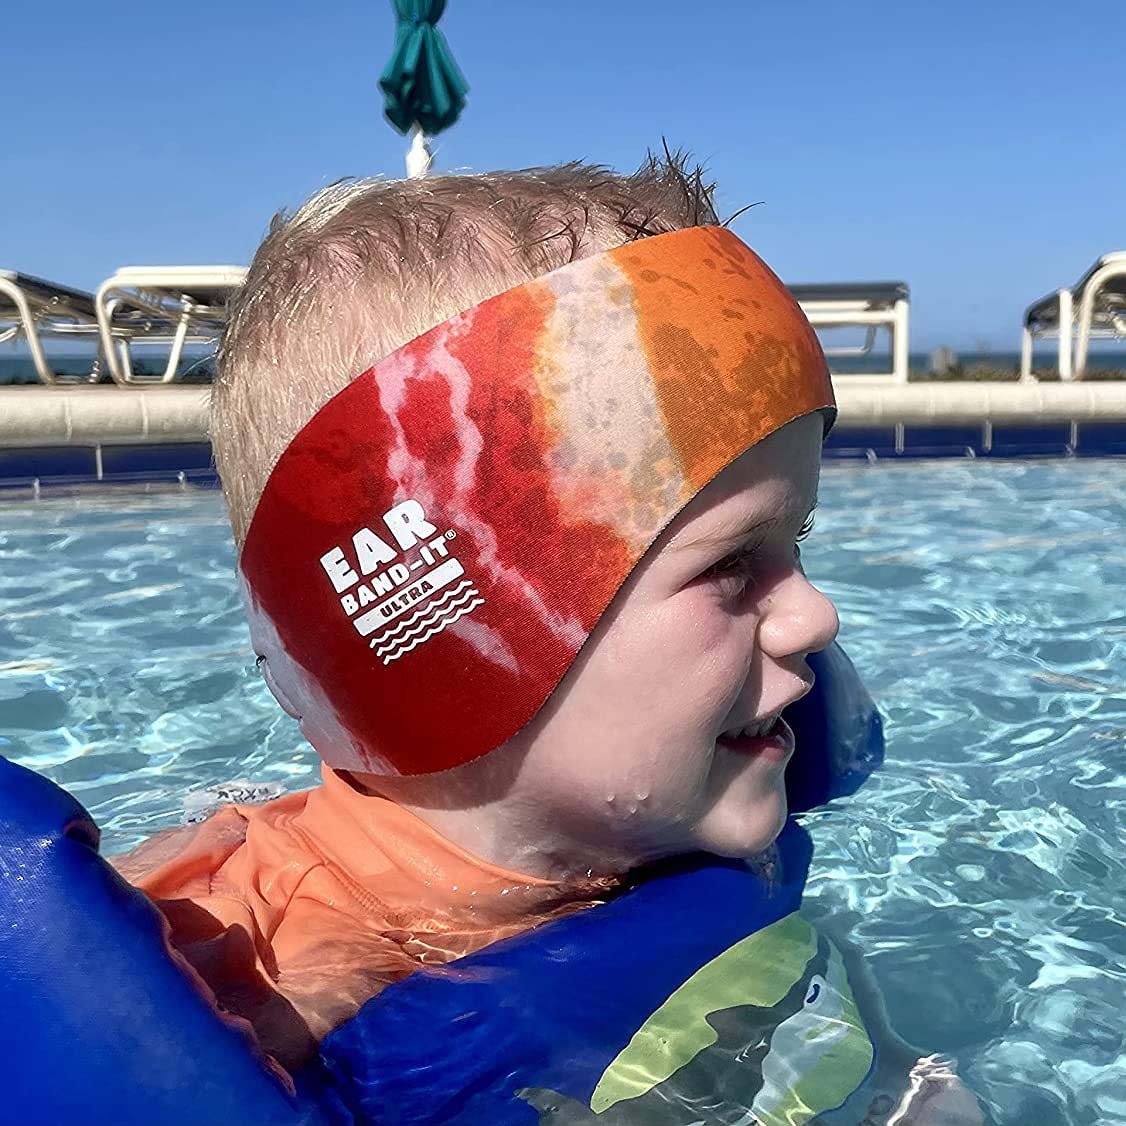 Ear Band-It Ultra Swimmer's Headband - Tie Dye Orange